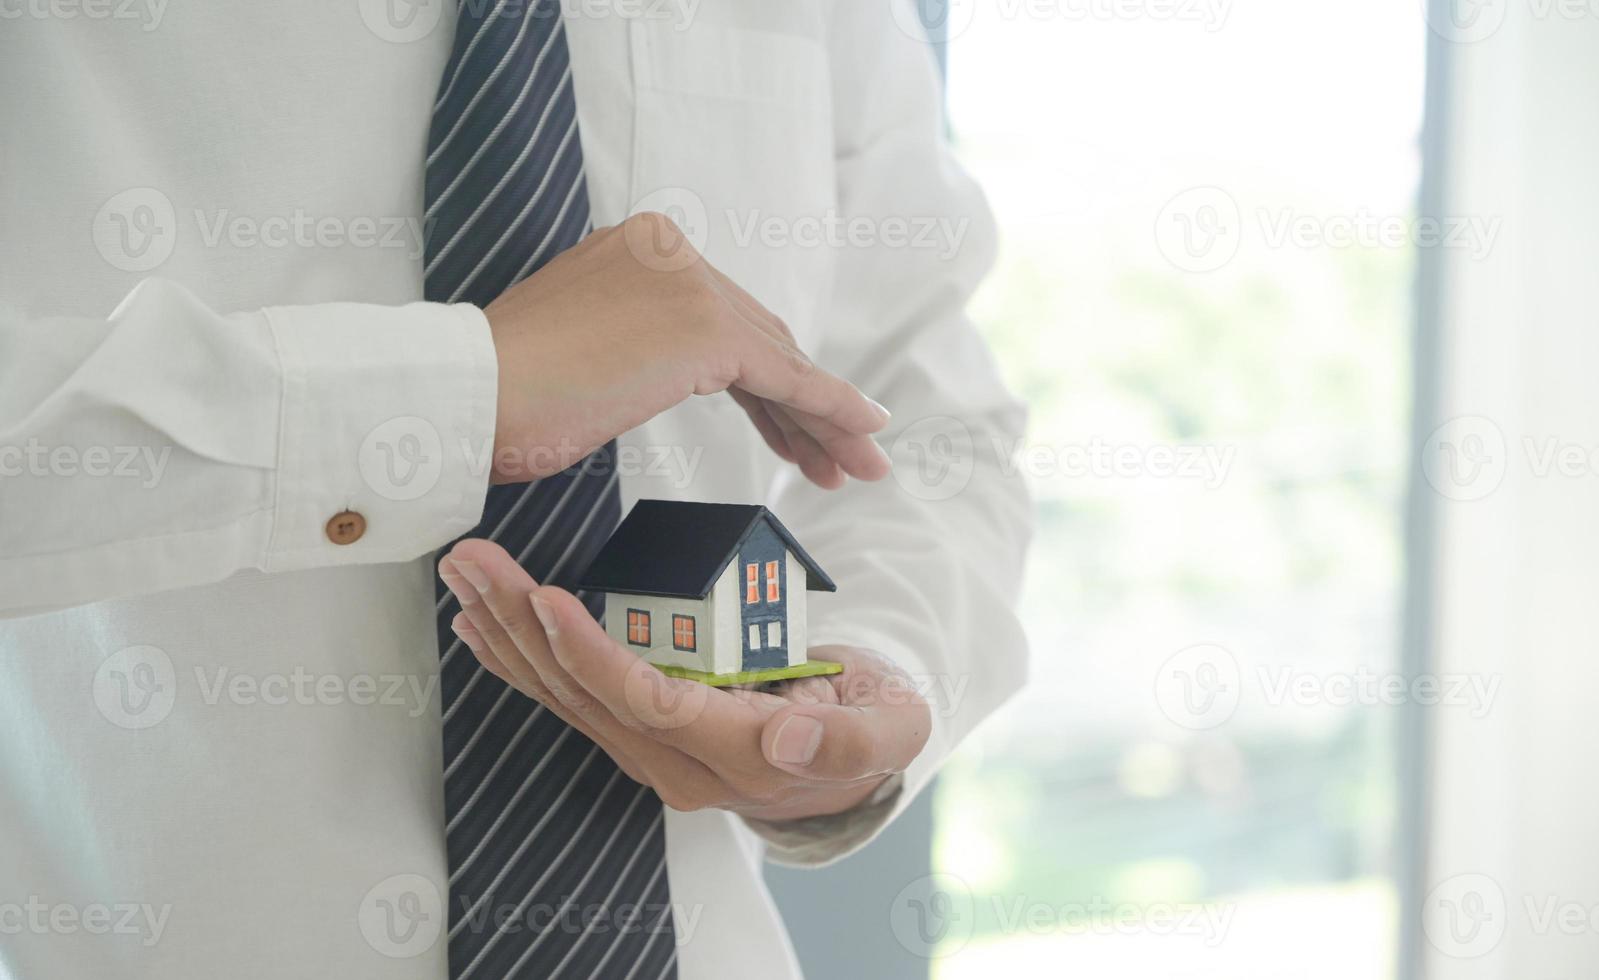 l'agente di assicurazione tiene in mano un modello di casa che mostra il simbolo dell'assicurazione sulla casa. foto